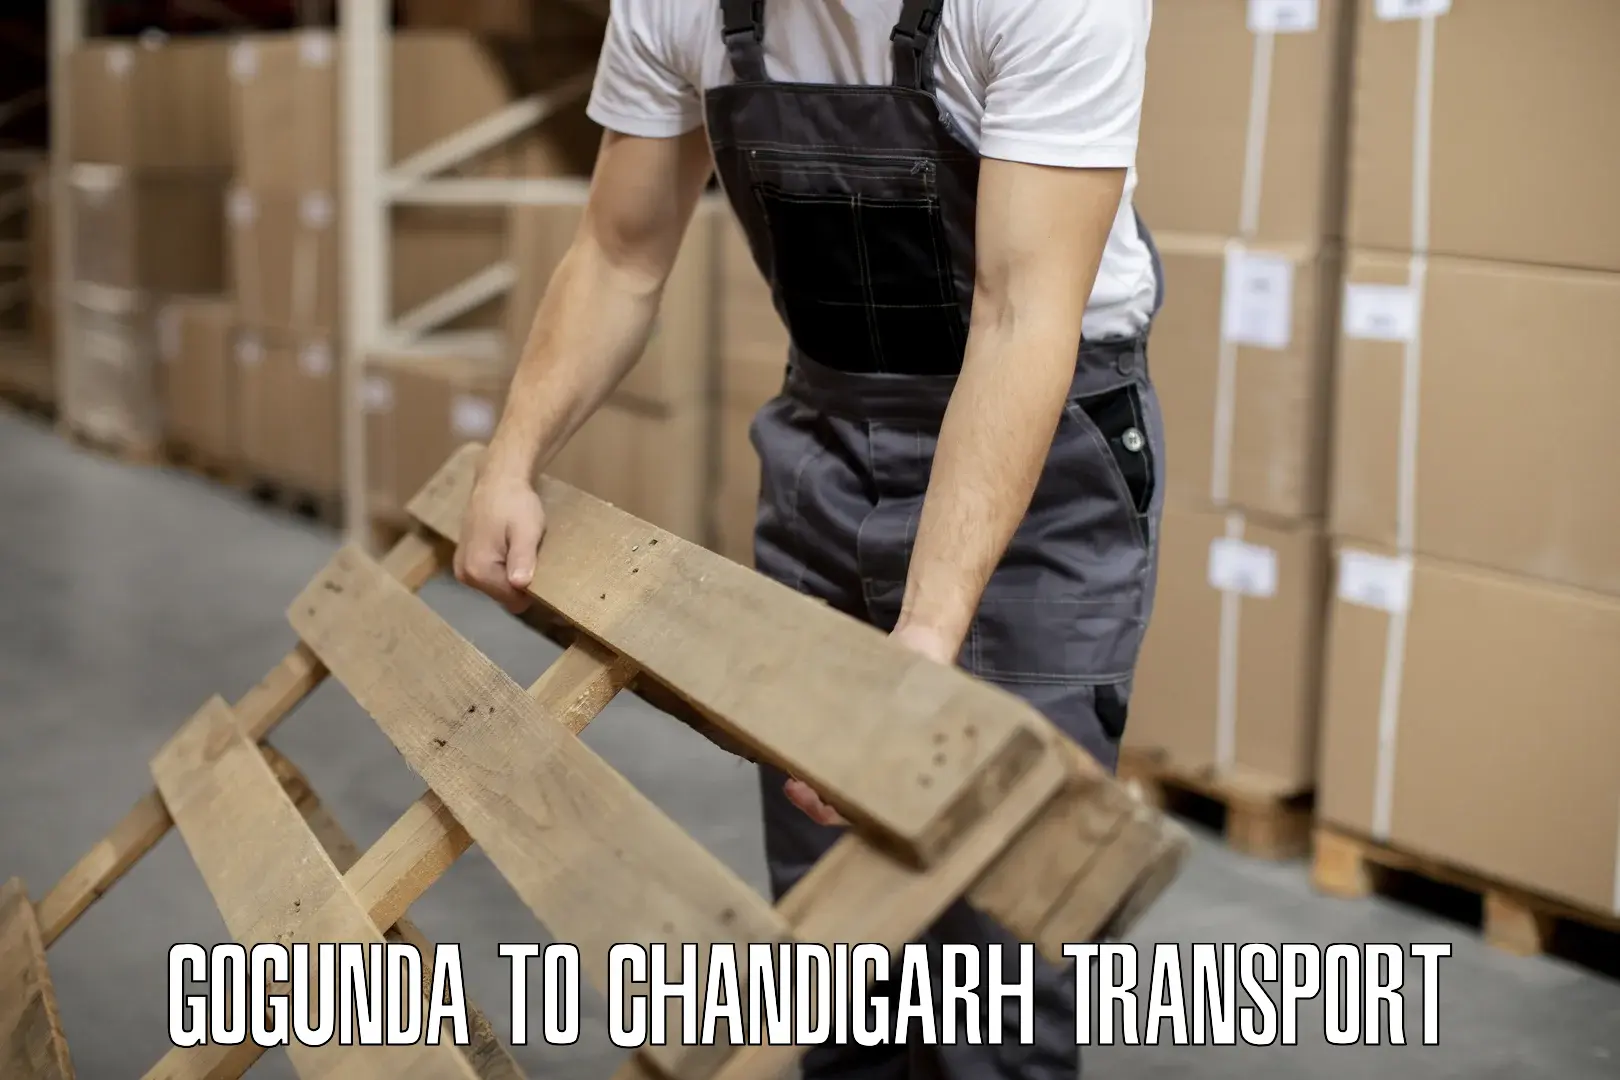 Truck transport companies in India Gogunda to Chandigarh